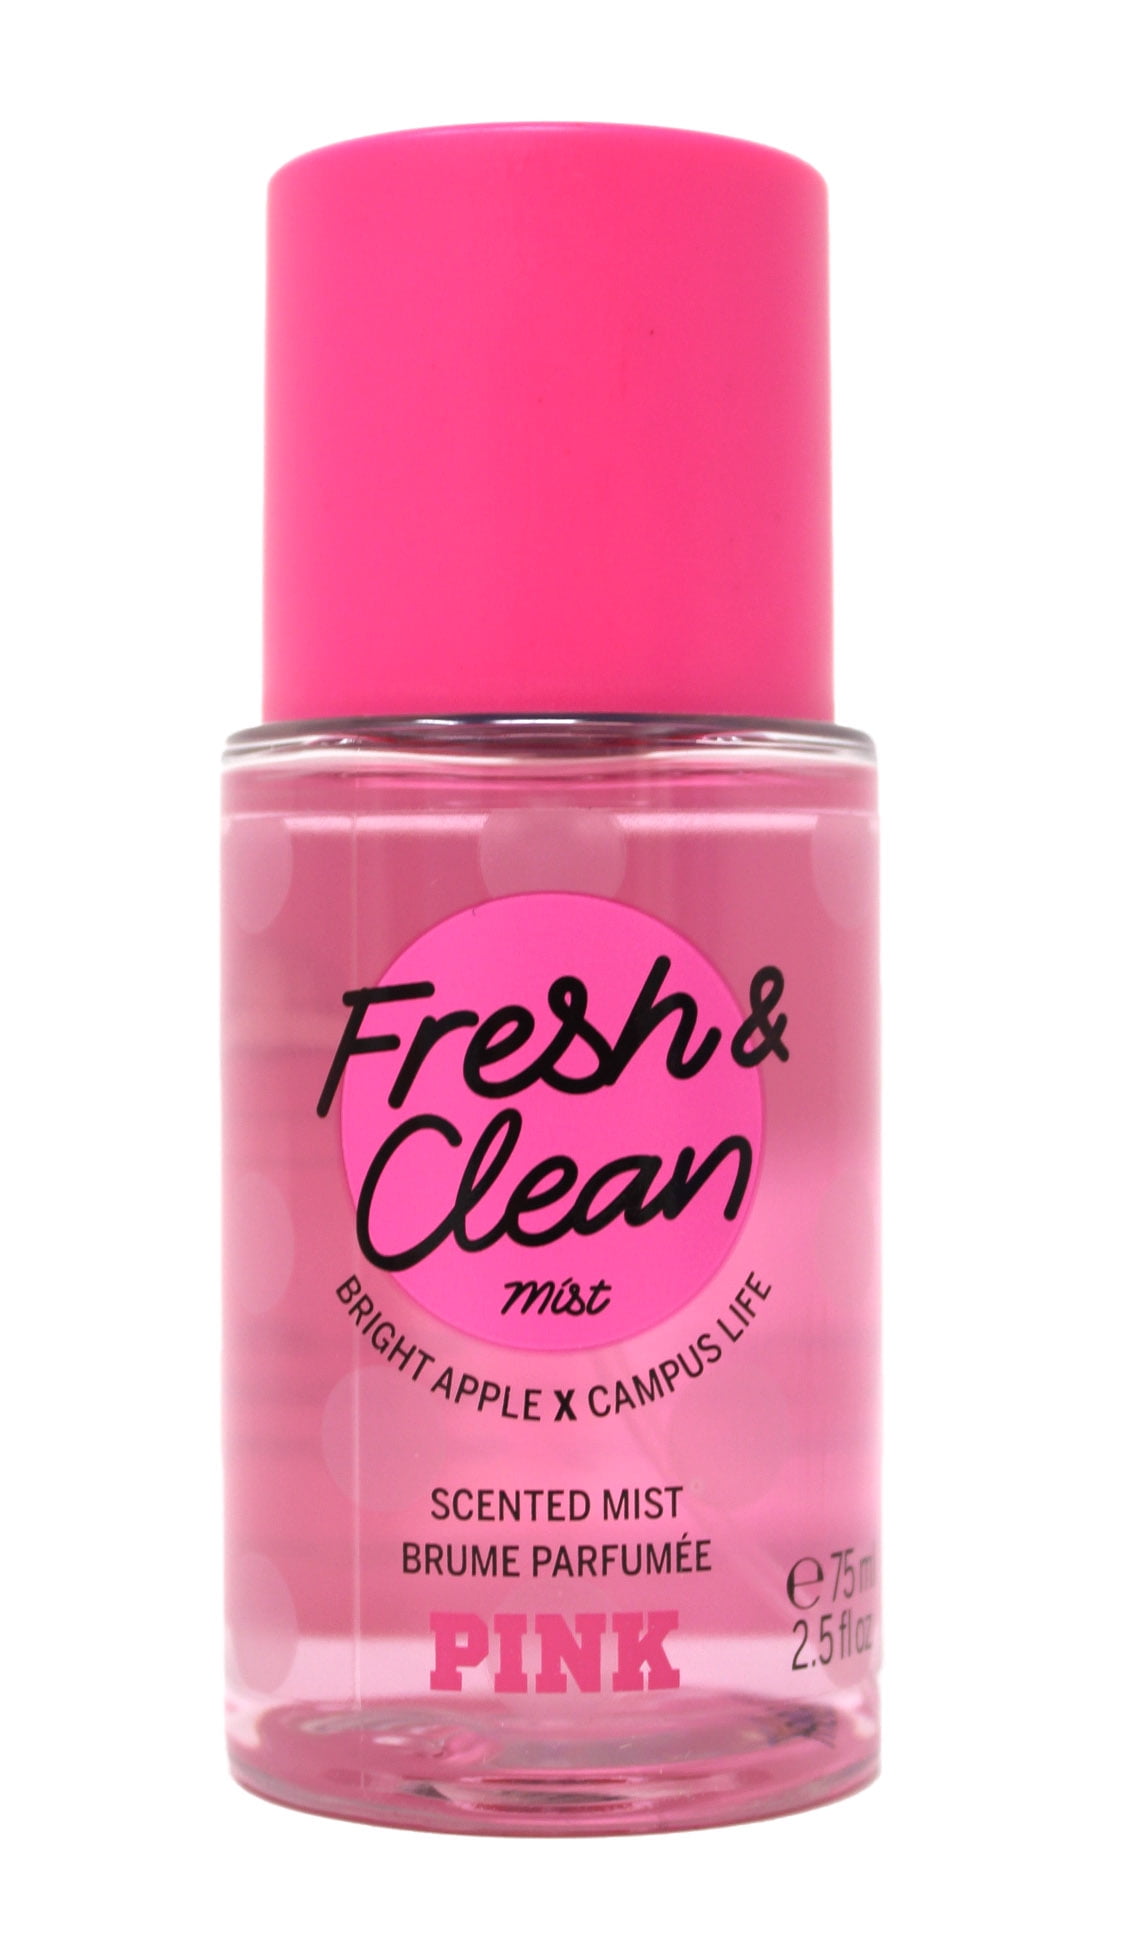 Victoria's Secret Pink Fresh & Clean Body Mist 2.5 Ounces